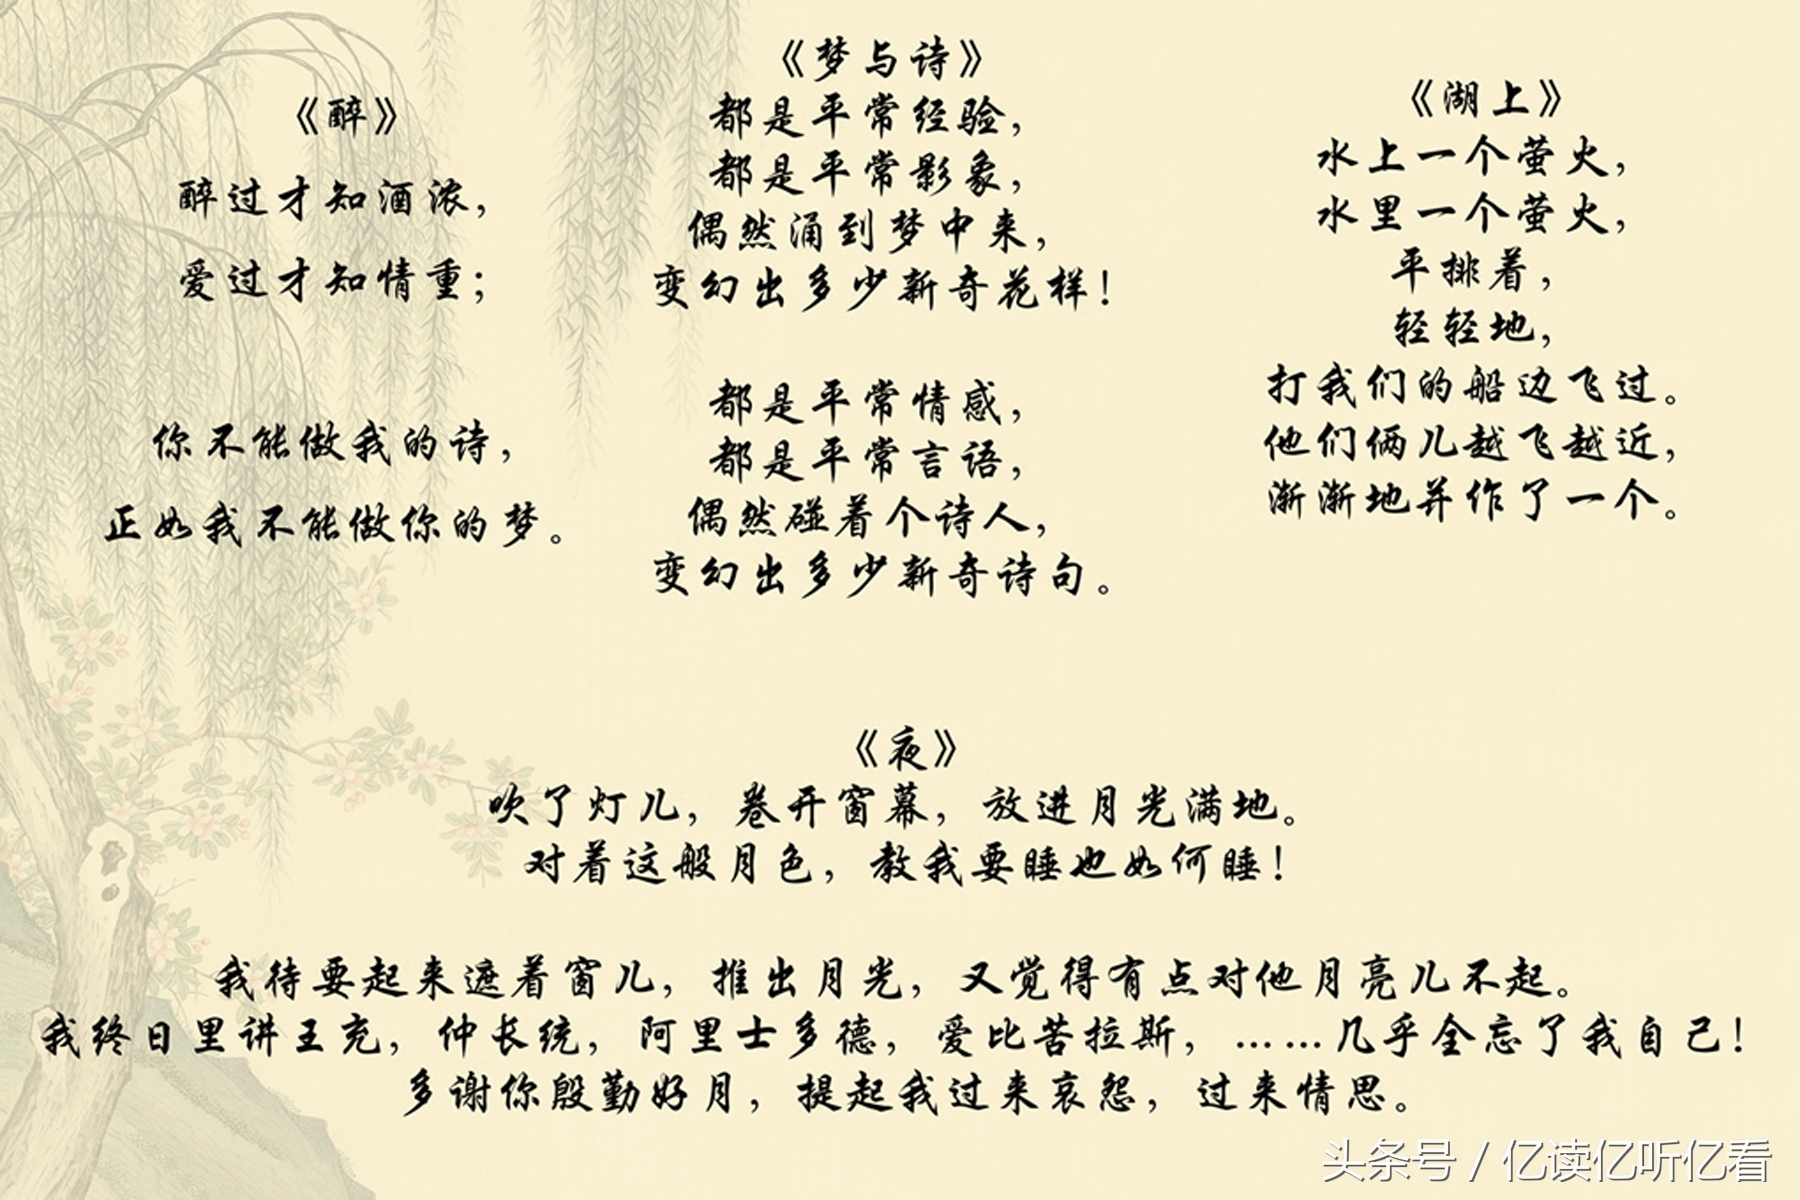 中国现代诗歌发展史（一）